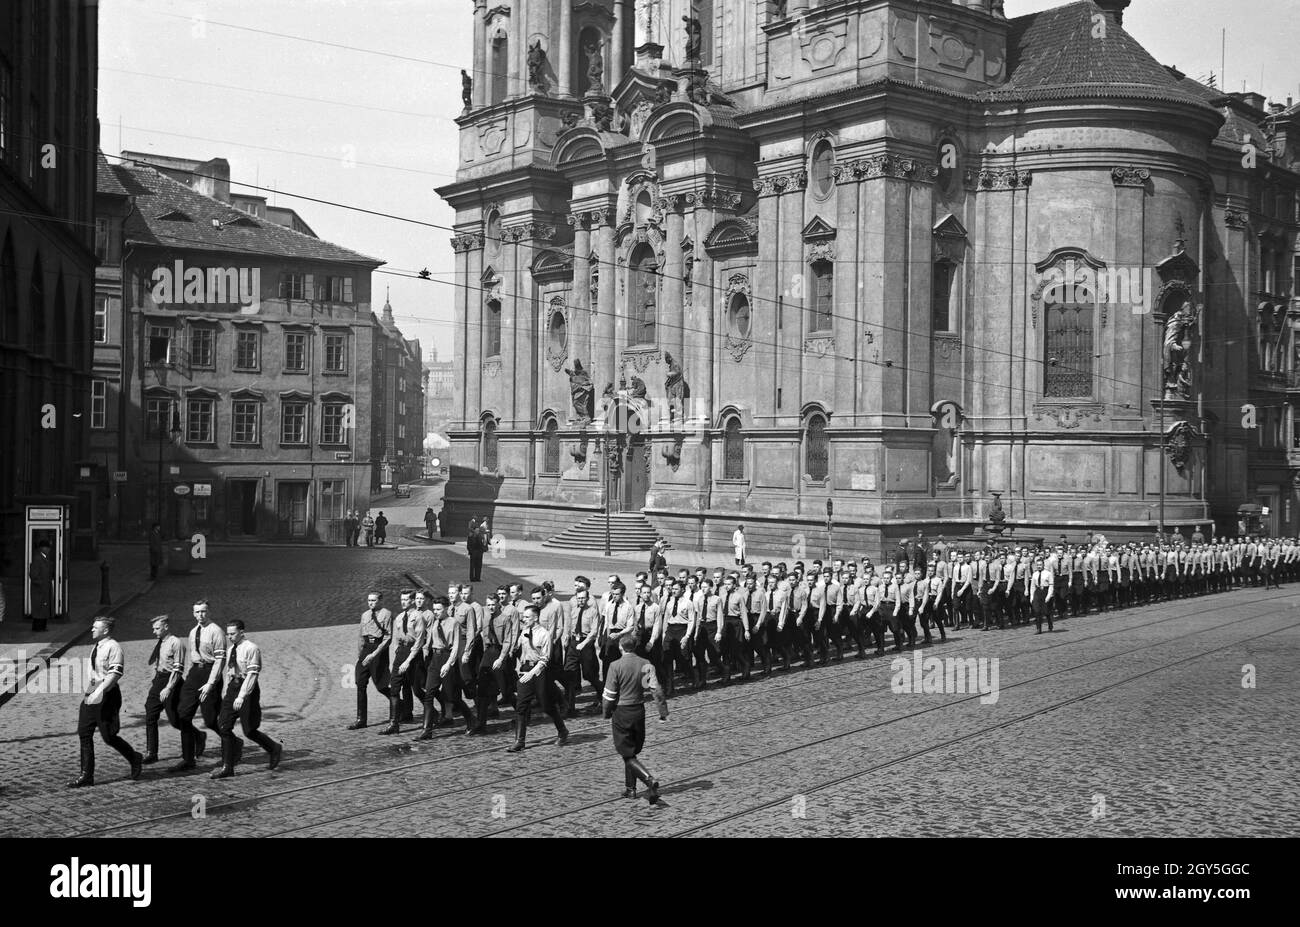 Originalbildunterschrift: Heimkehr deutscher Studenten von einem Sonntagsmarsch. Ankunft am Altstädter Ring in rag, im Hintergrund die russische Kirche, 1930er Jahre. Stock Photo